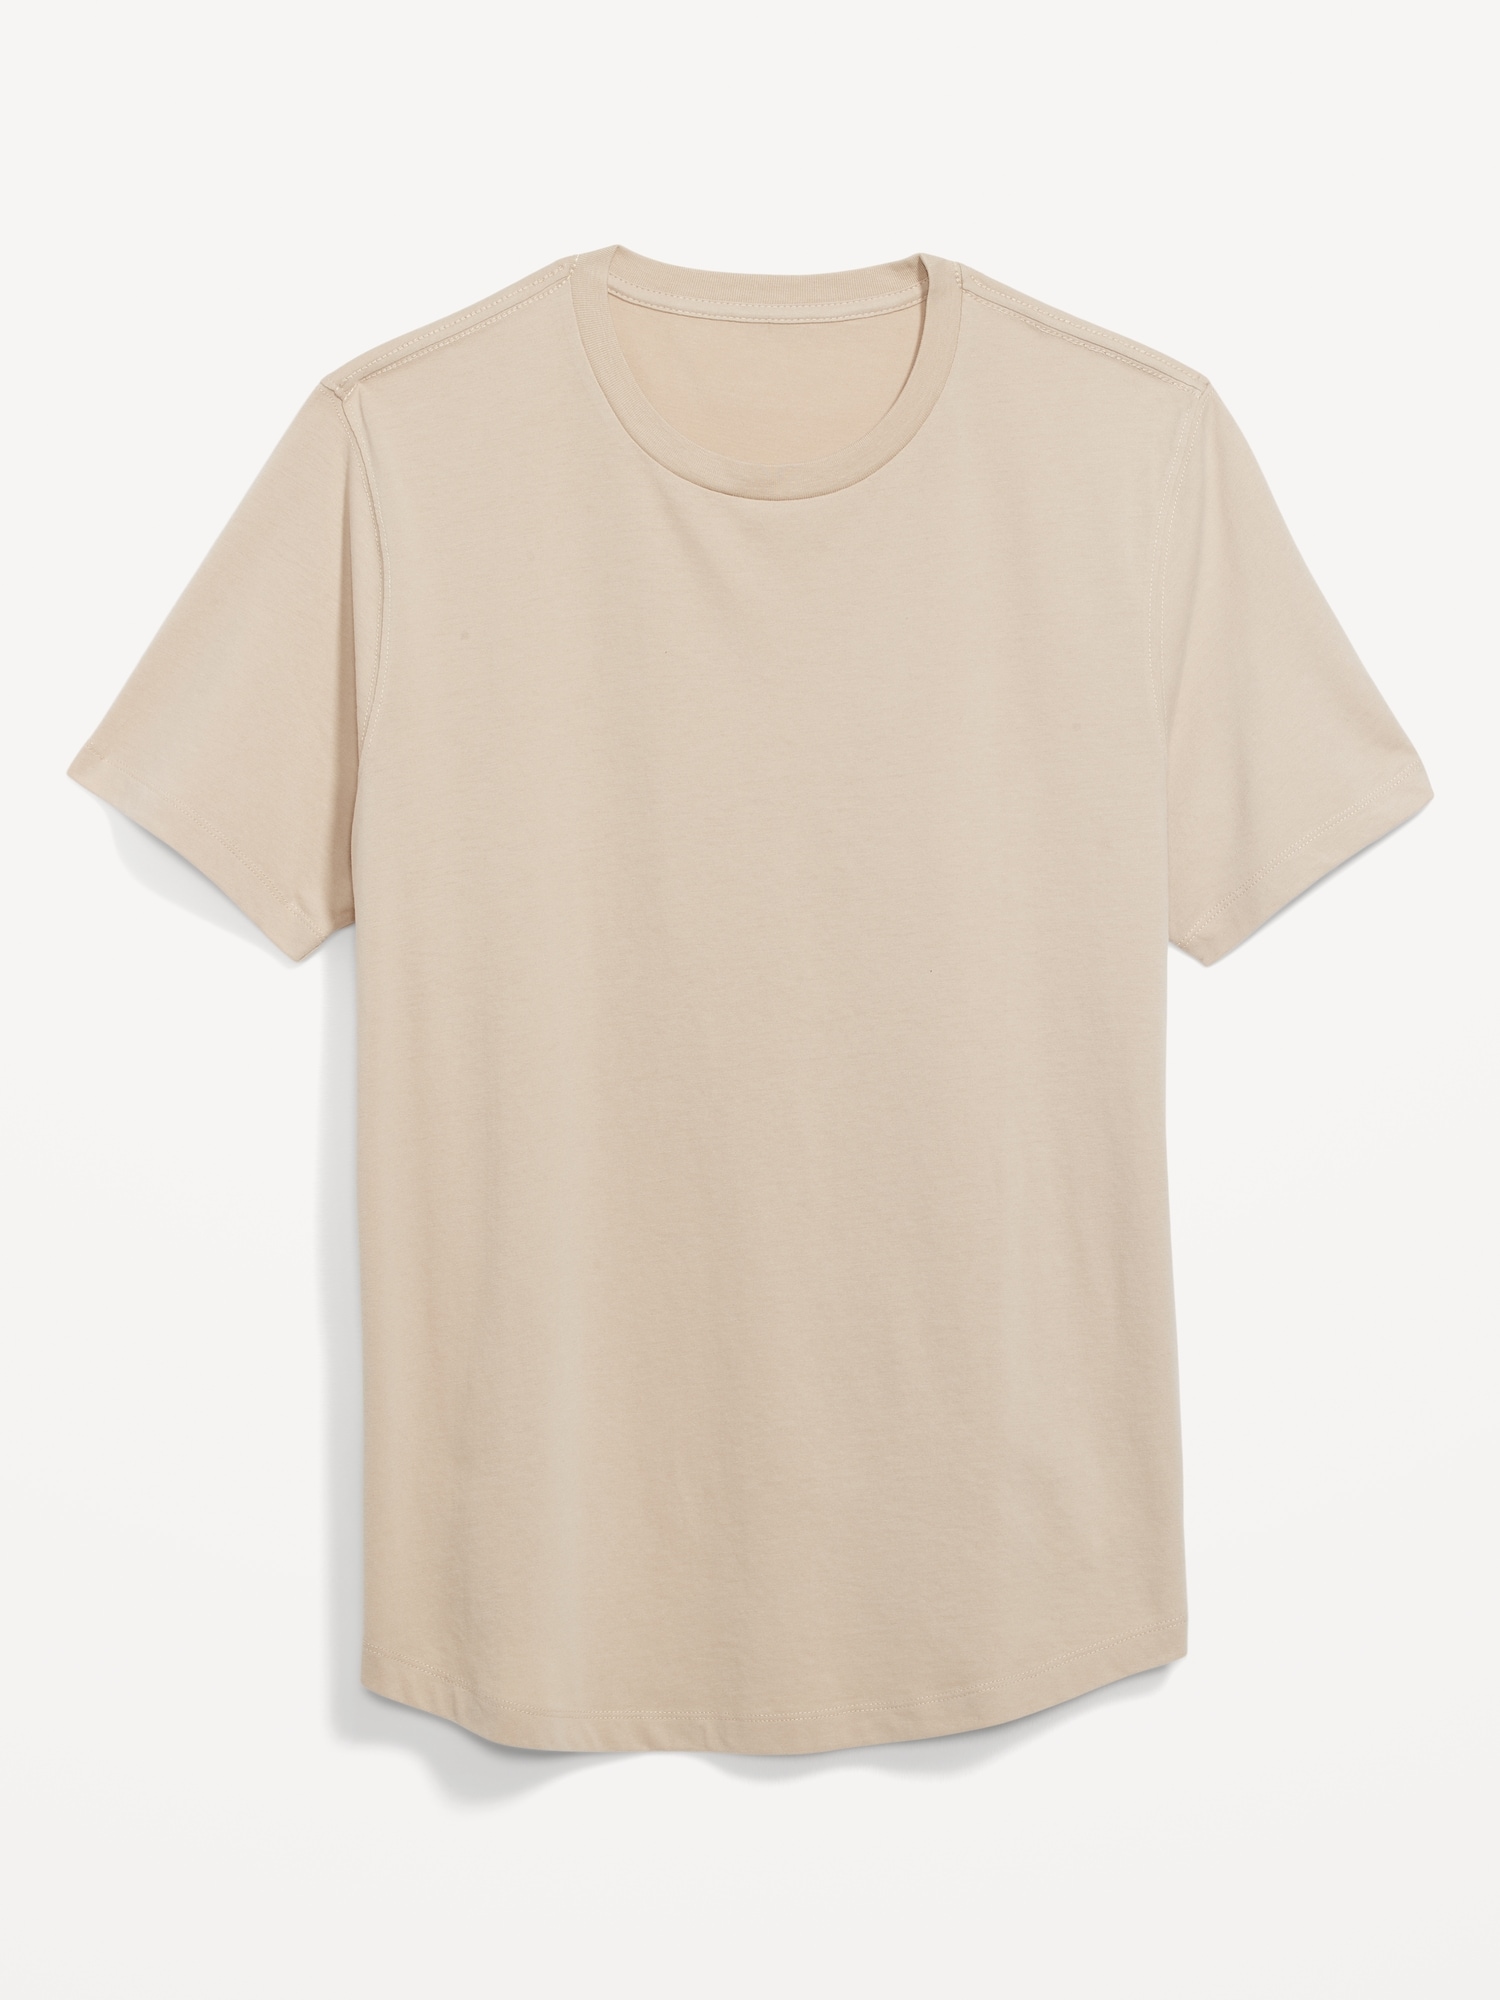 Old Navy Soft-Washed Curved-Hem T-Shirt for Men beige. 1